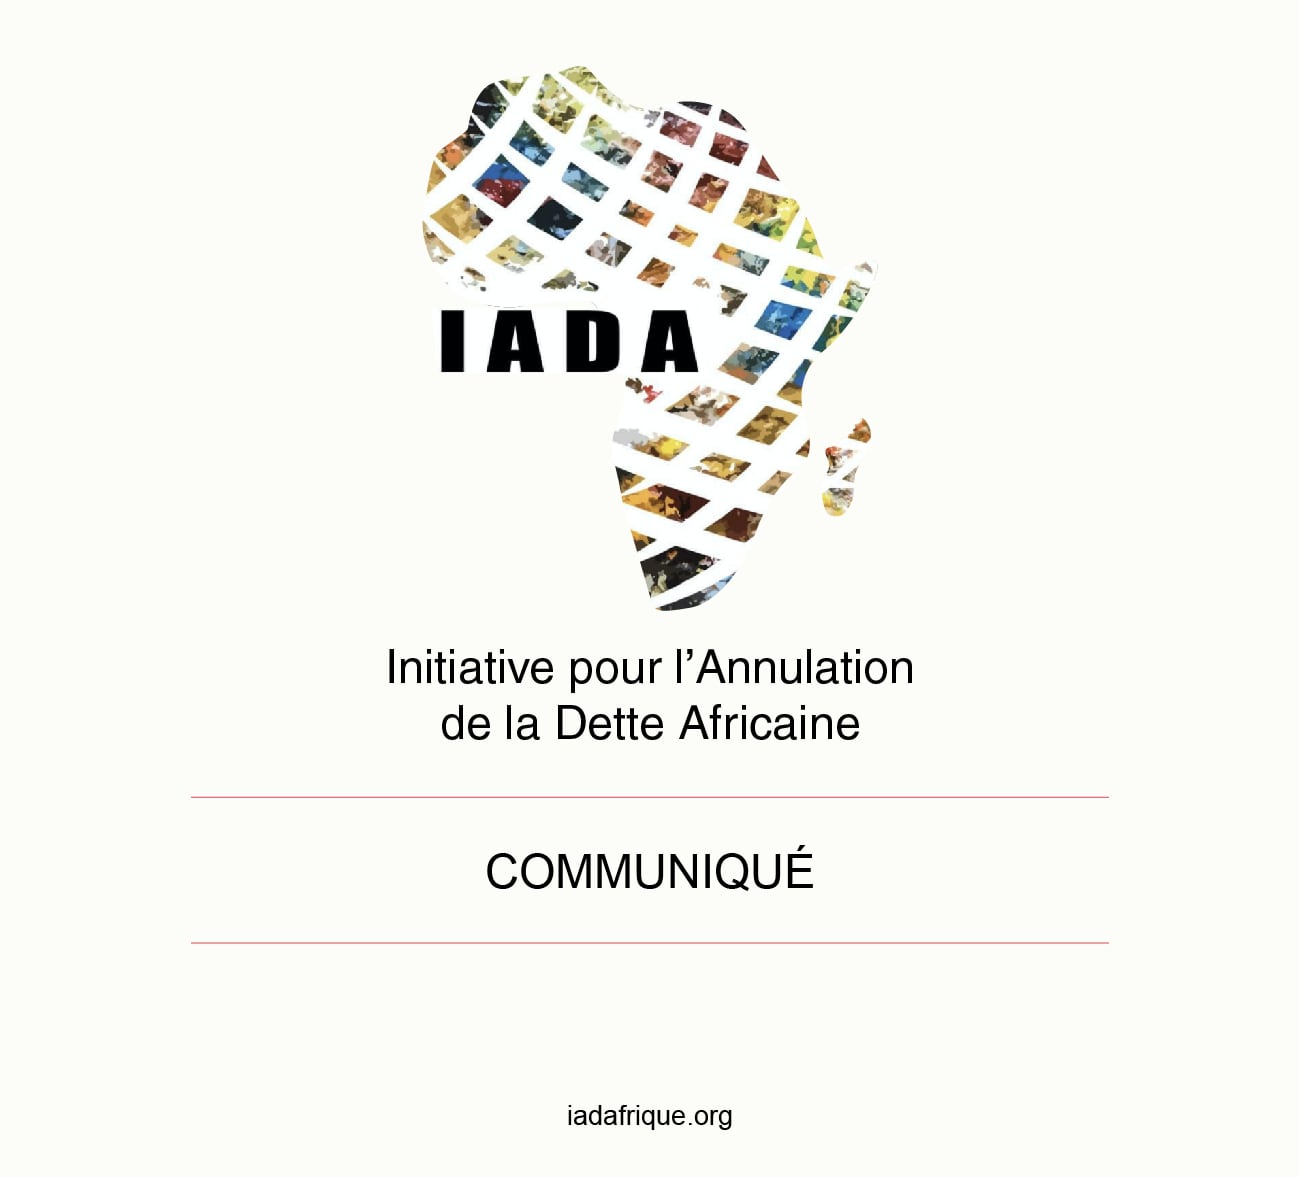 APPEL de DAKAR - L'IADA sollicite 1 million de signatures pour l'annulation de la dette africaine